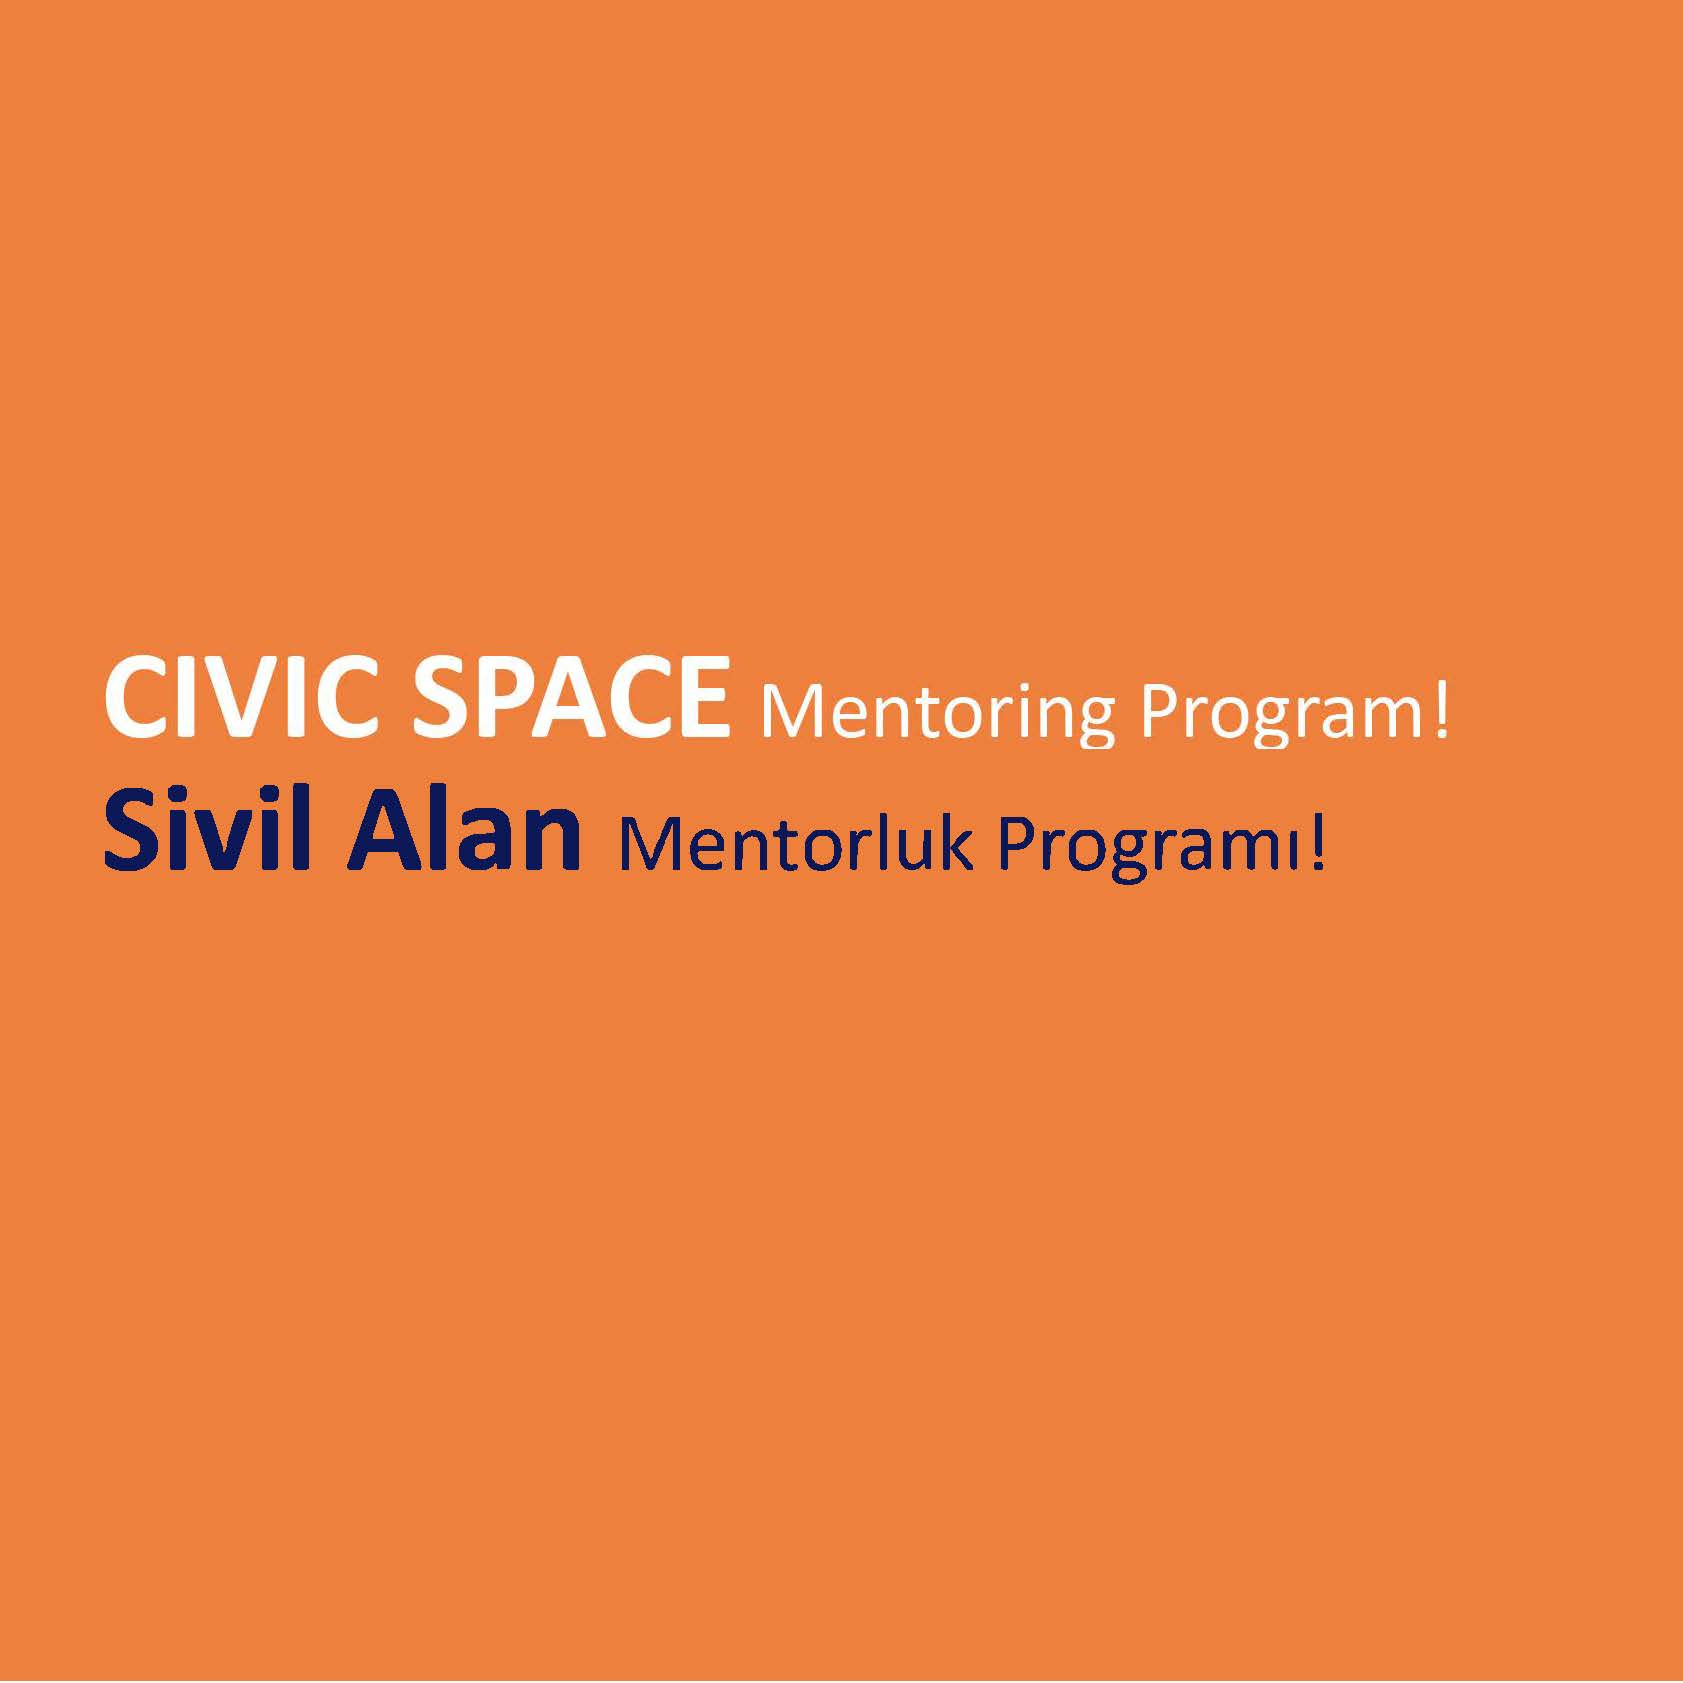 Sivil Alan Mentorluk Programı yeni dönemine hazırlanıyor!